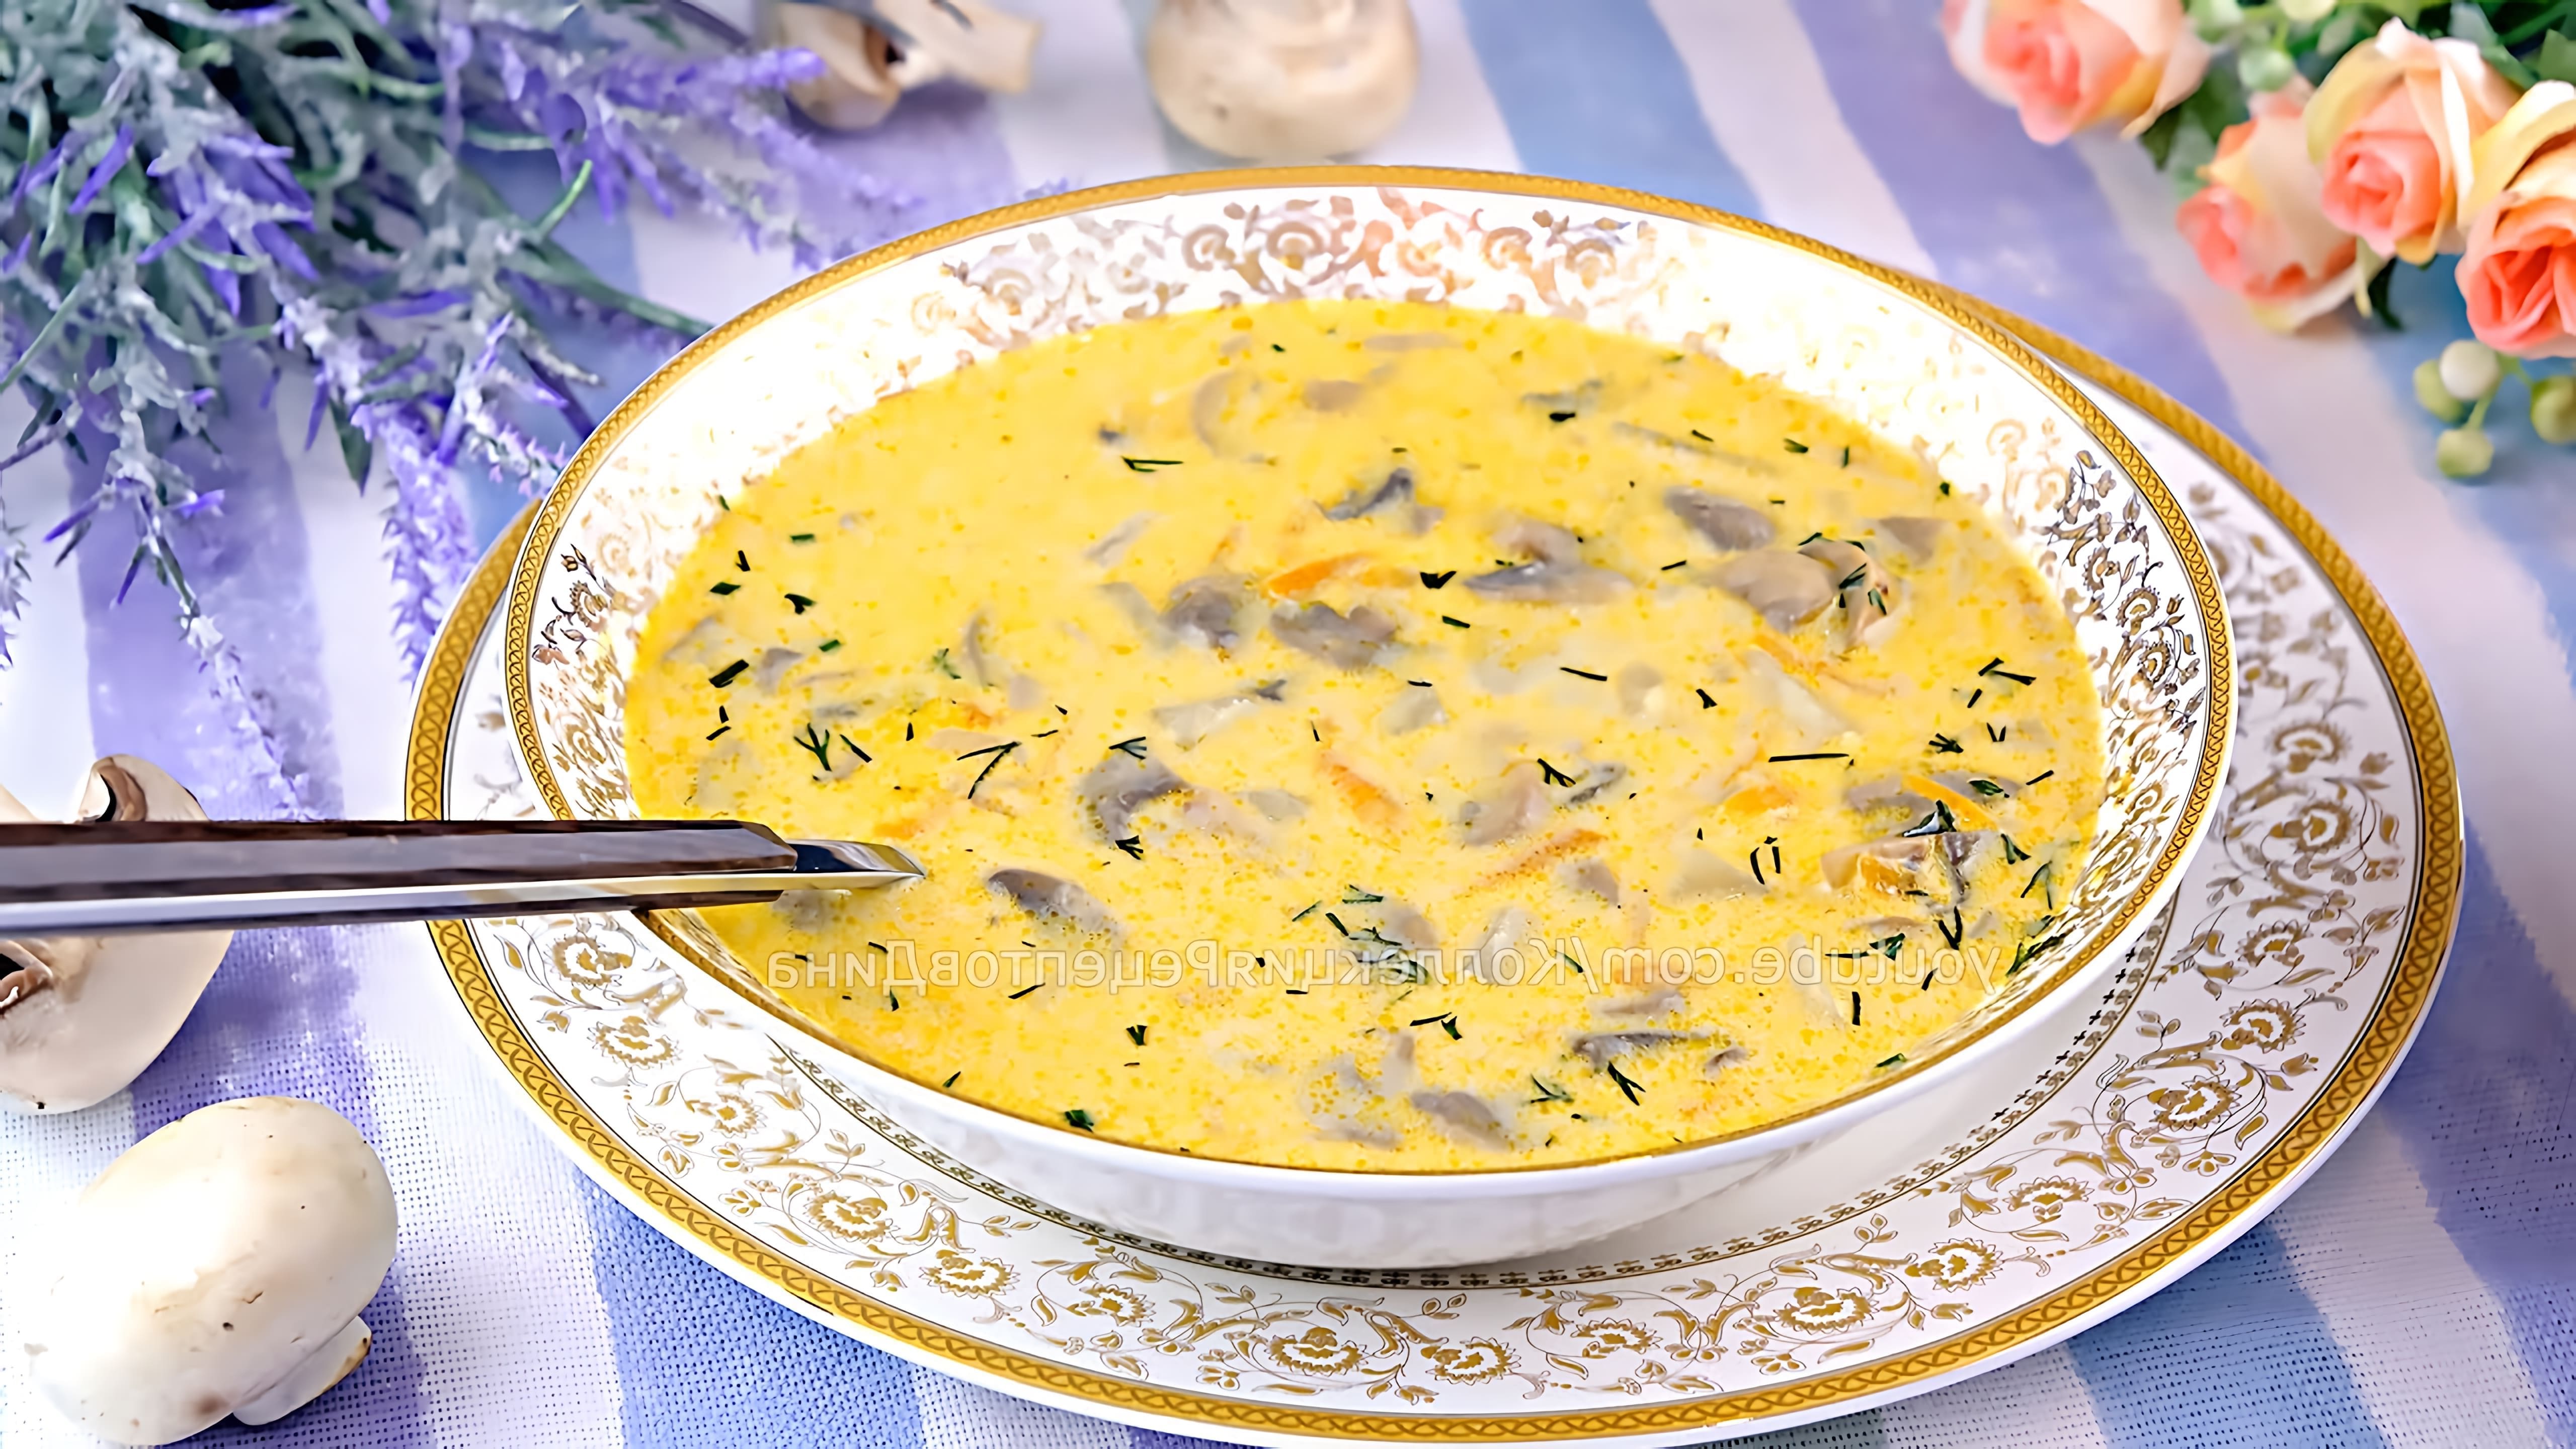 🧀Сливочно-сырный суп с шампиньонами! Один из любимых рецептов грибного супа! 